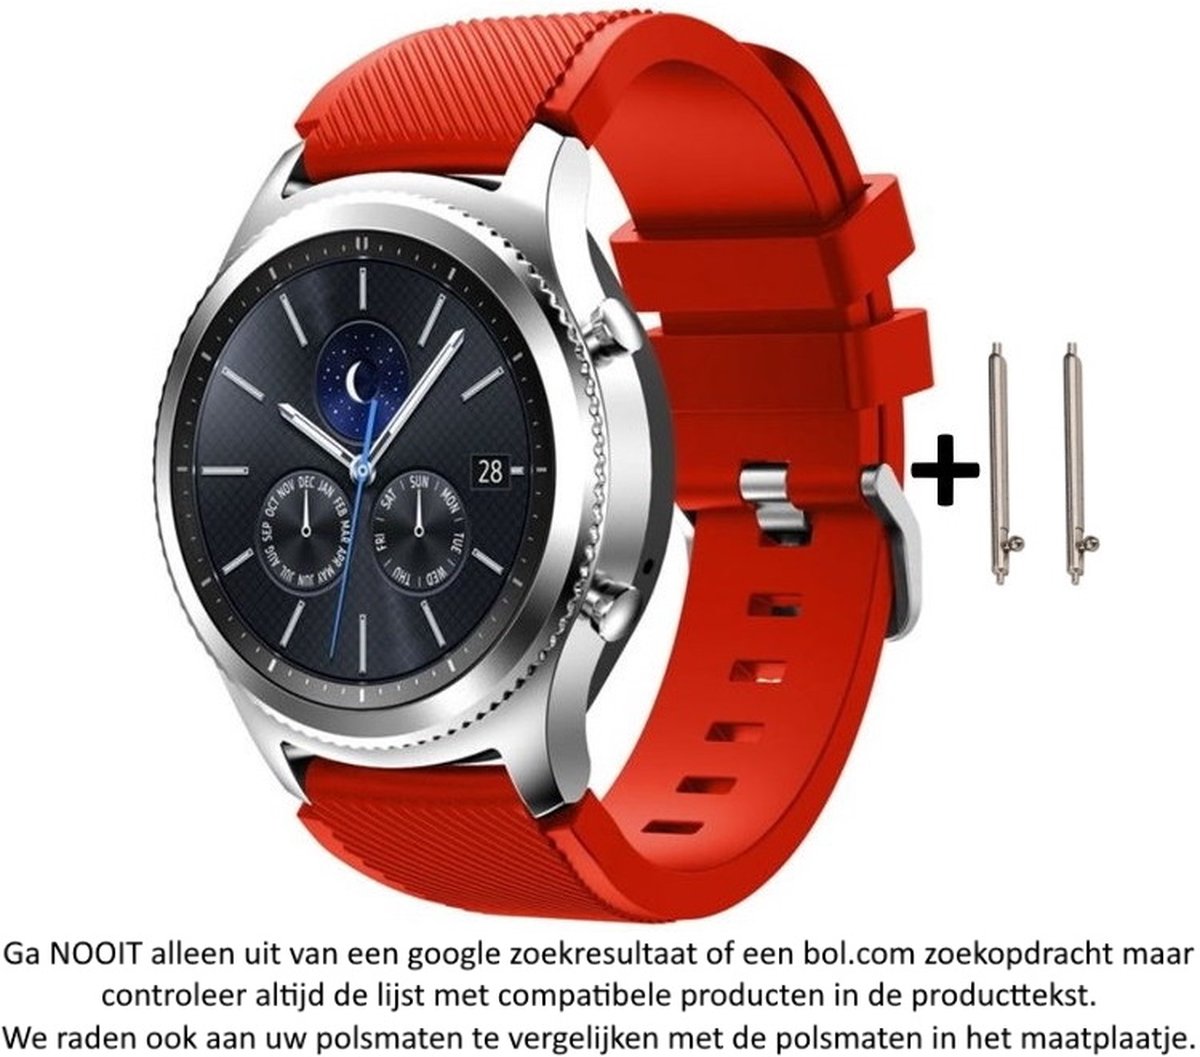 Rood Siliconen Bandje geschikt voor 22mm smartwatches van verschillende grote merken (zie lijst met compatibele modellen in producttekst) - Maat: zie maatfoto - 22 mm red rubber smartwatch strap